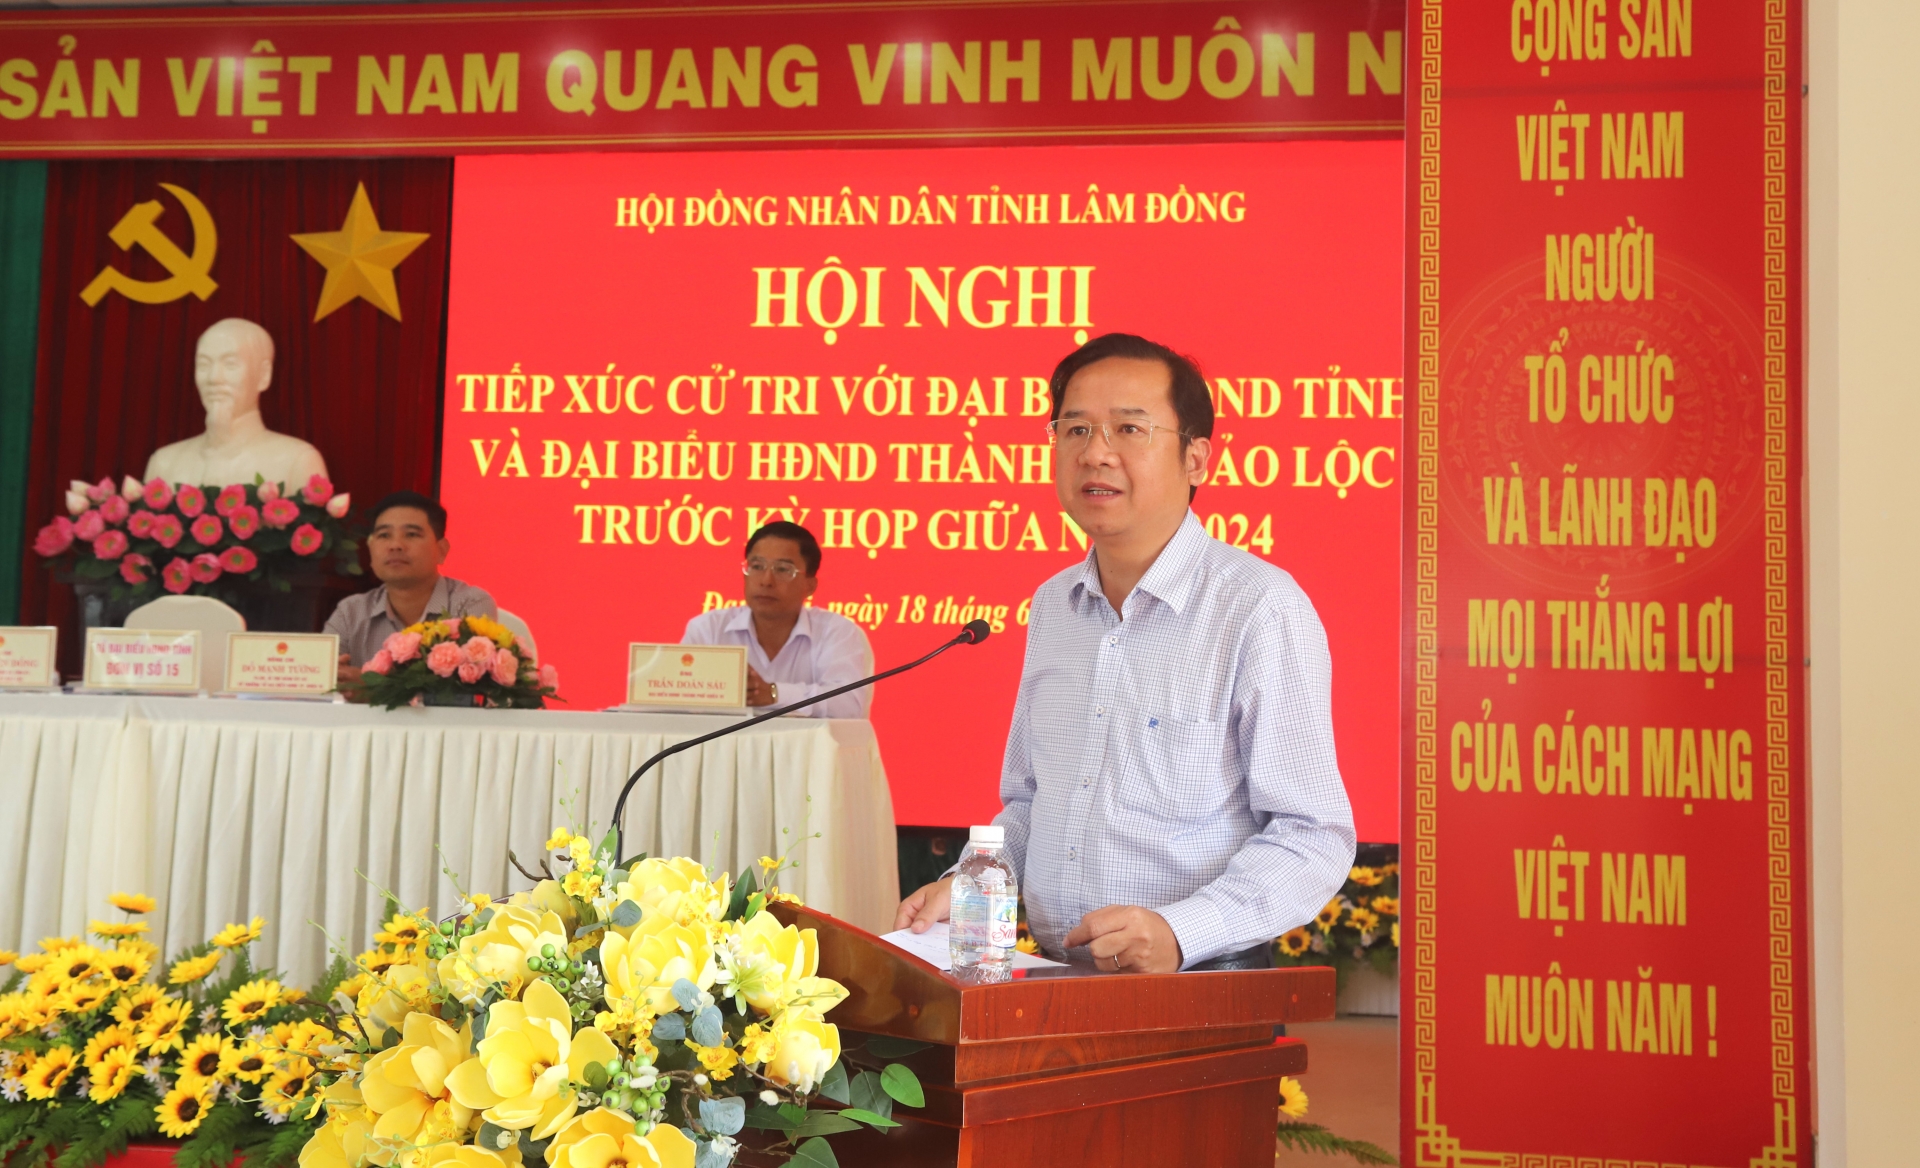 Đồng chí Tôn Thiện Đồng - Bí thư Thành ủy Bảo Lộc tiếp thu, giải trình ý kiến, kiến nghị của cử tri